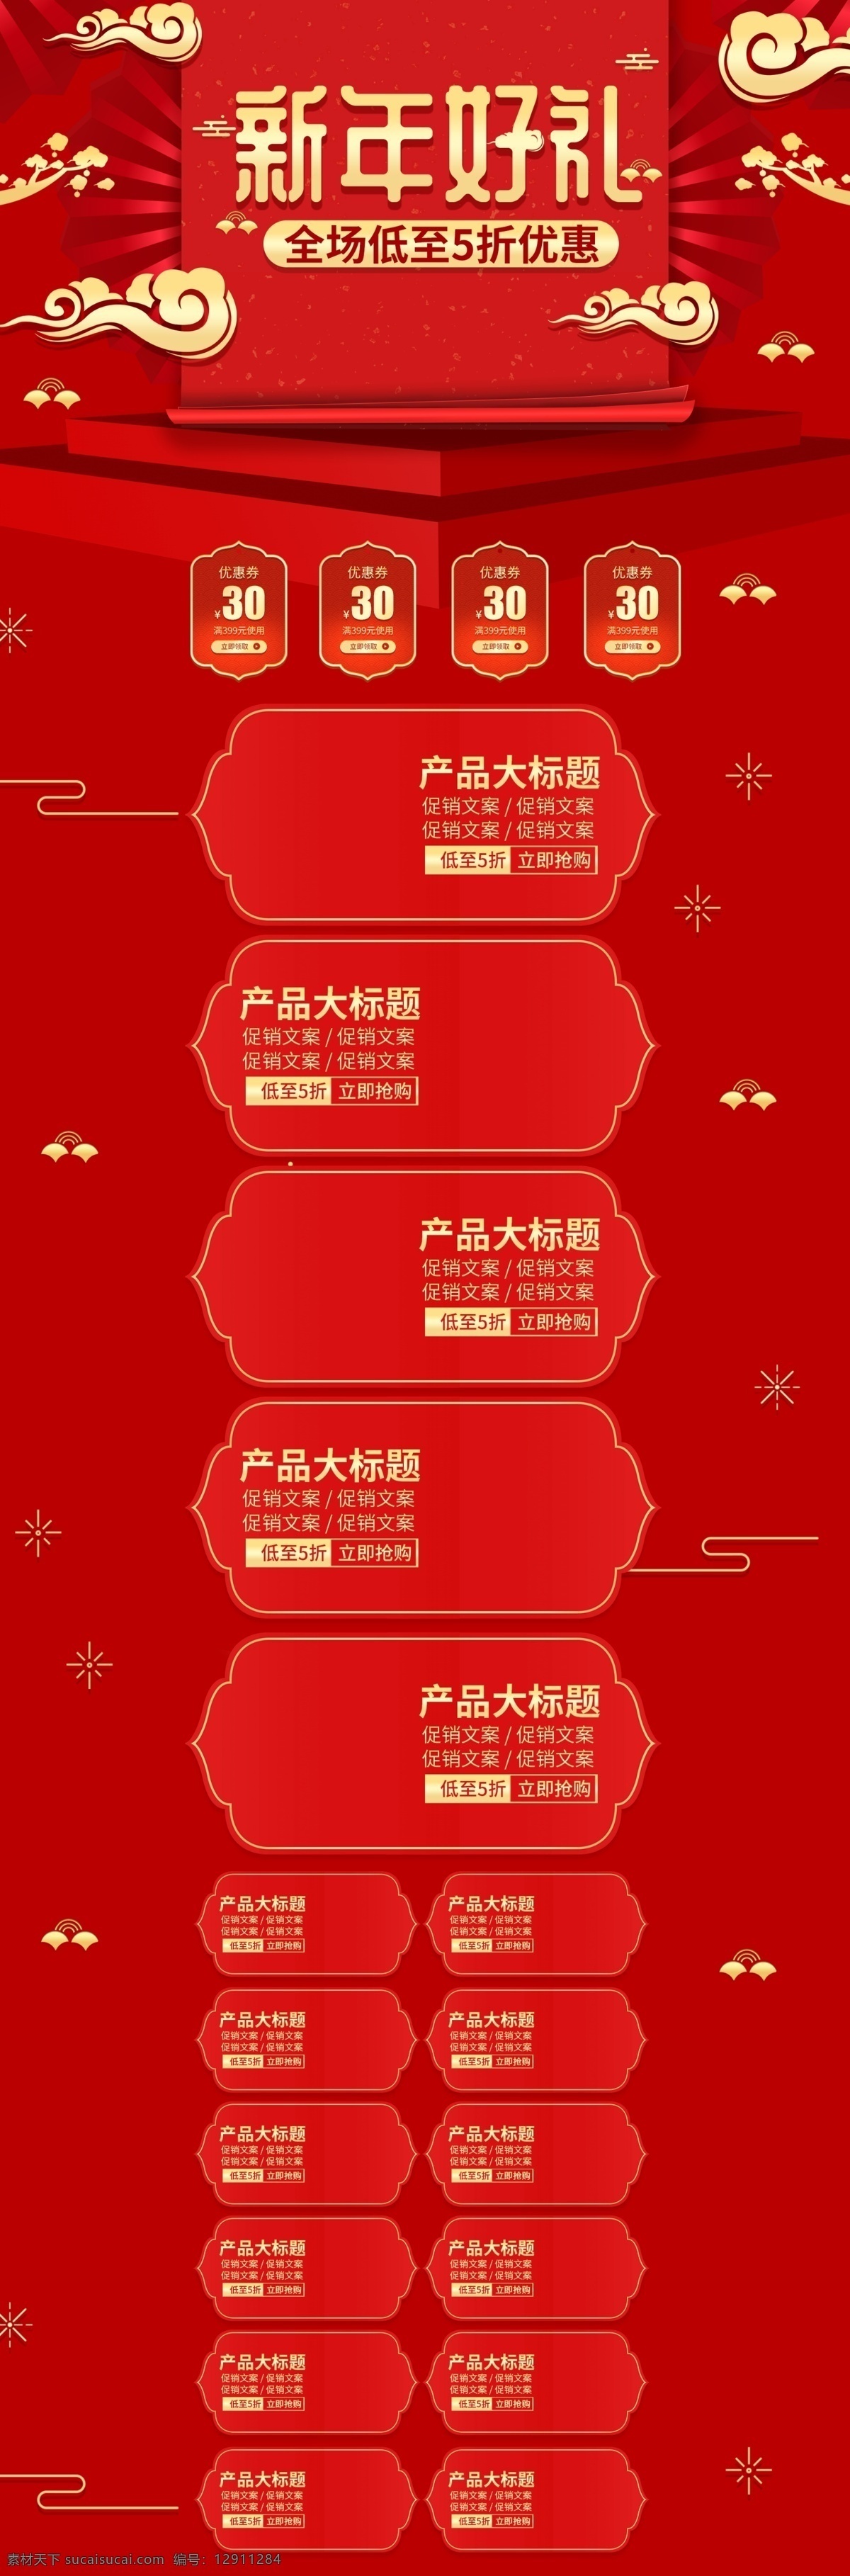 微 立体 剪影 中国 风 新年 礼物 优惠 促销 电商 首页 模板 天猫 微立体 中国风 淘宝